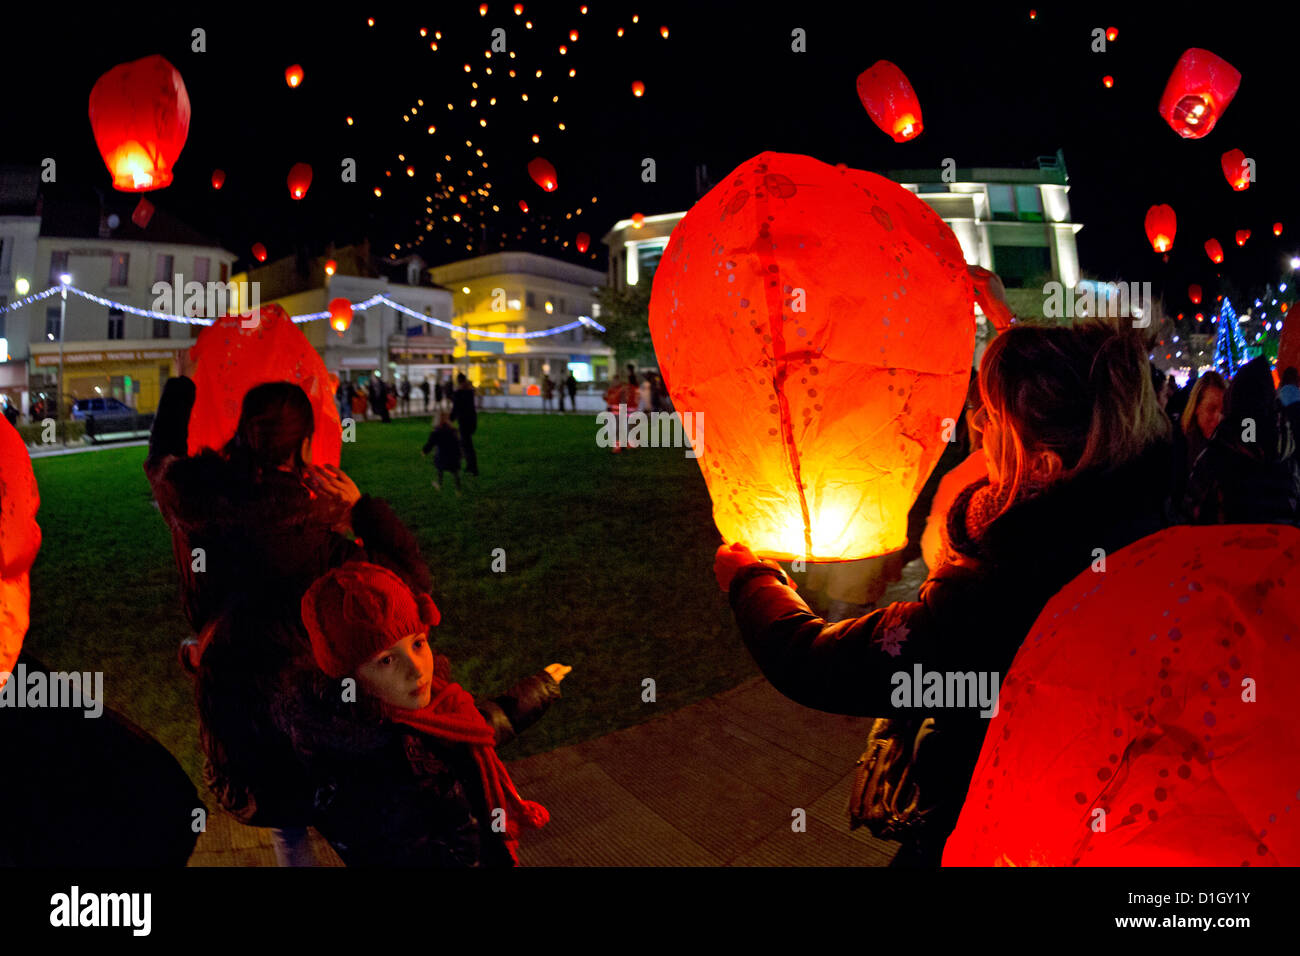 Une version de 1000 lanternes de vol en prenant les lettres de Noël (Vichy - France). Lanternes de ciel de nuit. Banque D'Images